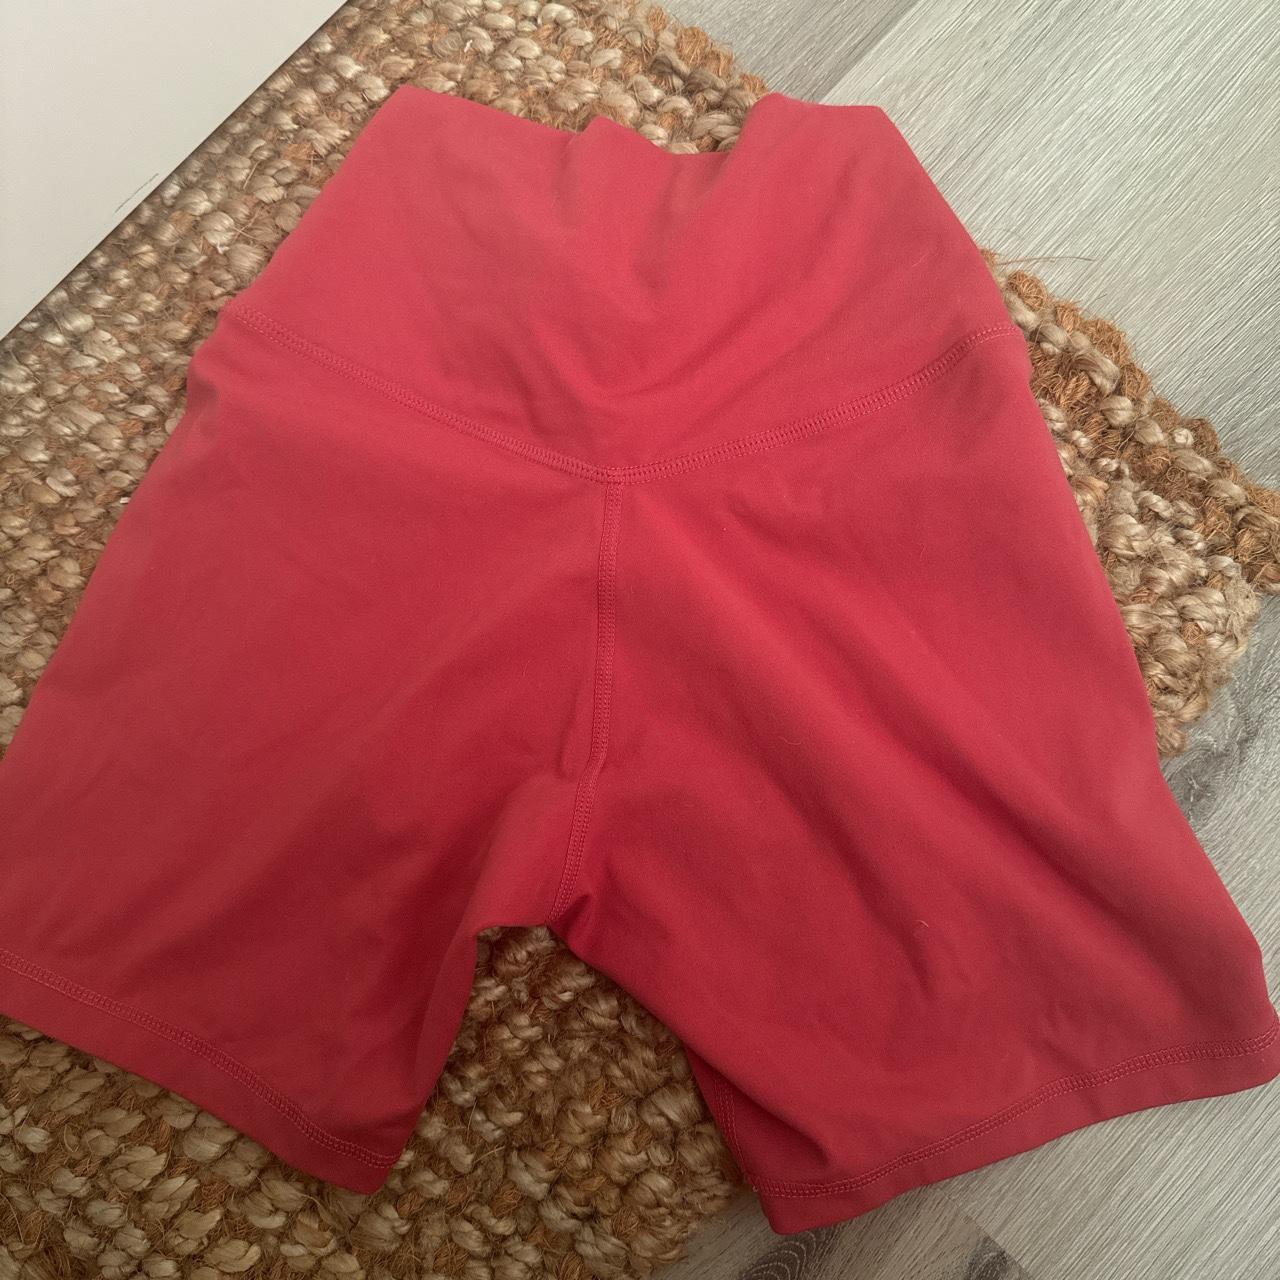 Yunoga biker shorts - buttery soft and - Depop